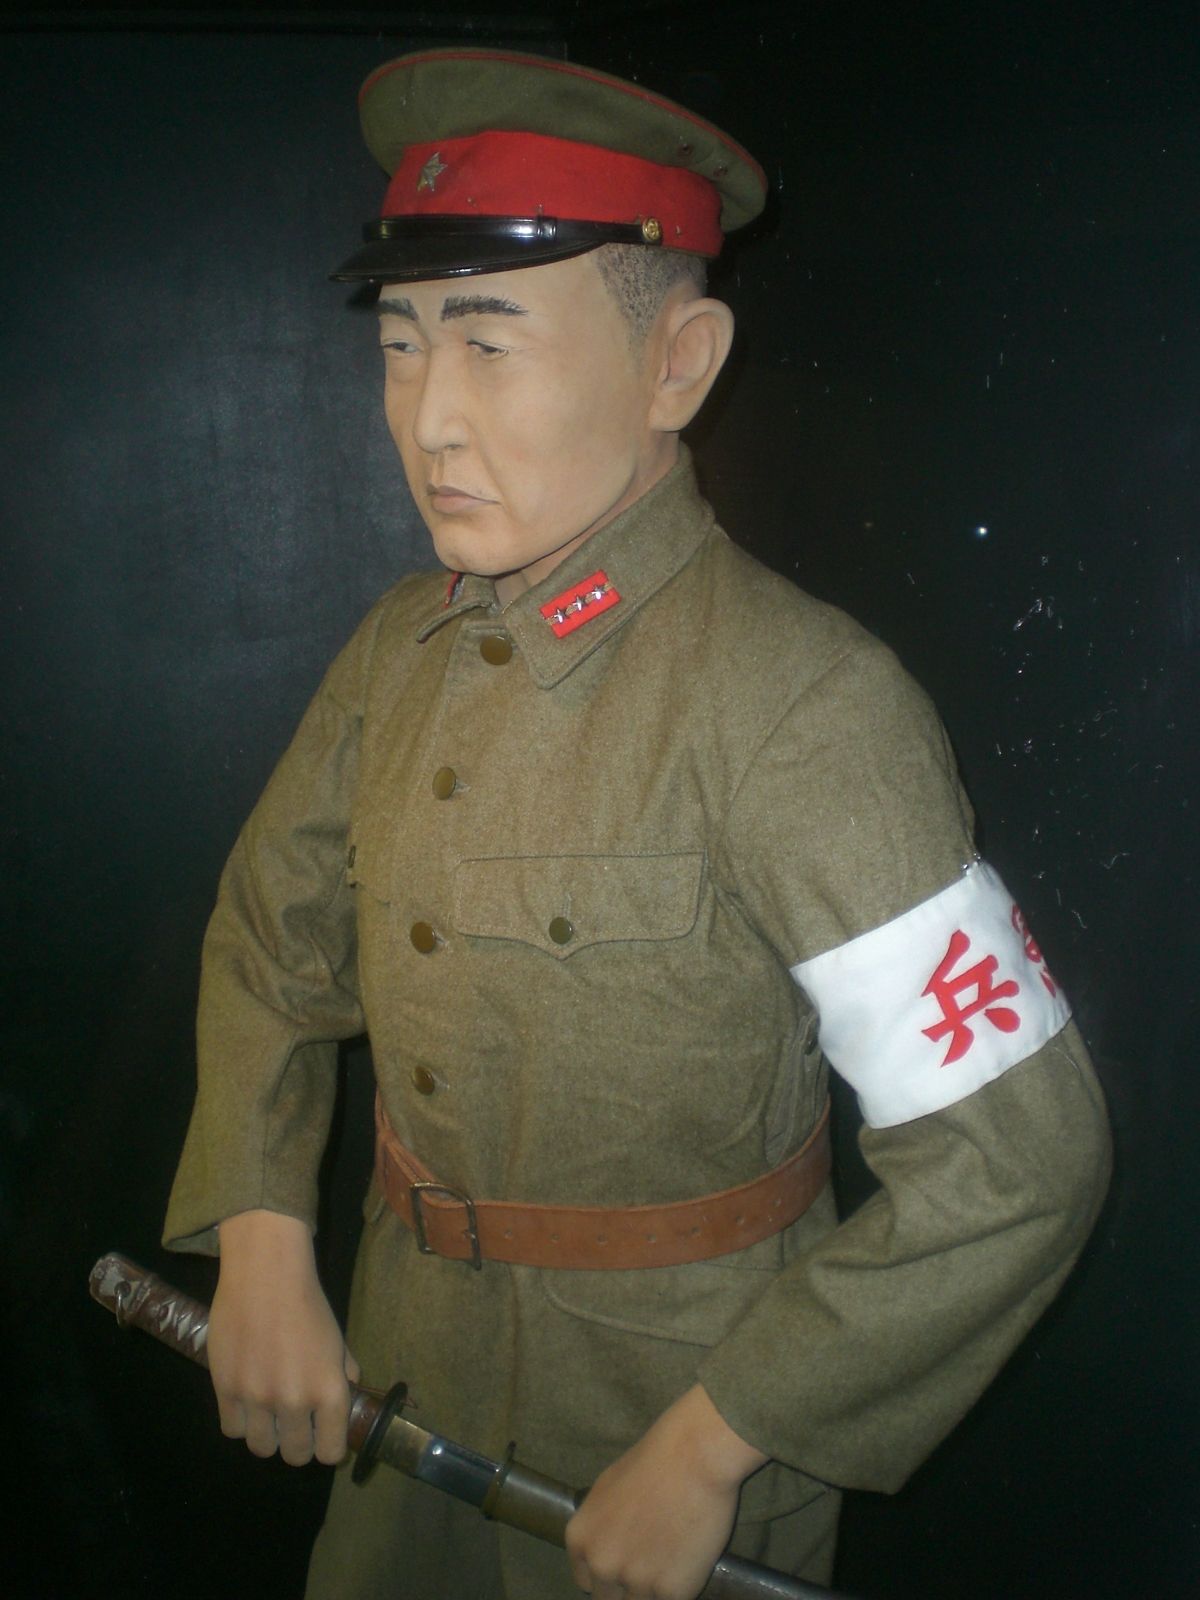 Mundur oficera Kempeitai, wystawiony w Muzeum Obrony Wybrzeża w Hongkongu (fot. Ahoiyin, lic. CC BY-SA 3.0).